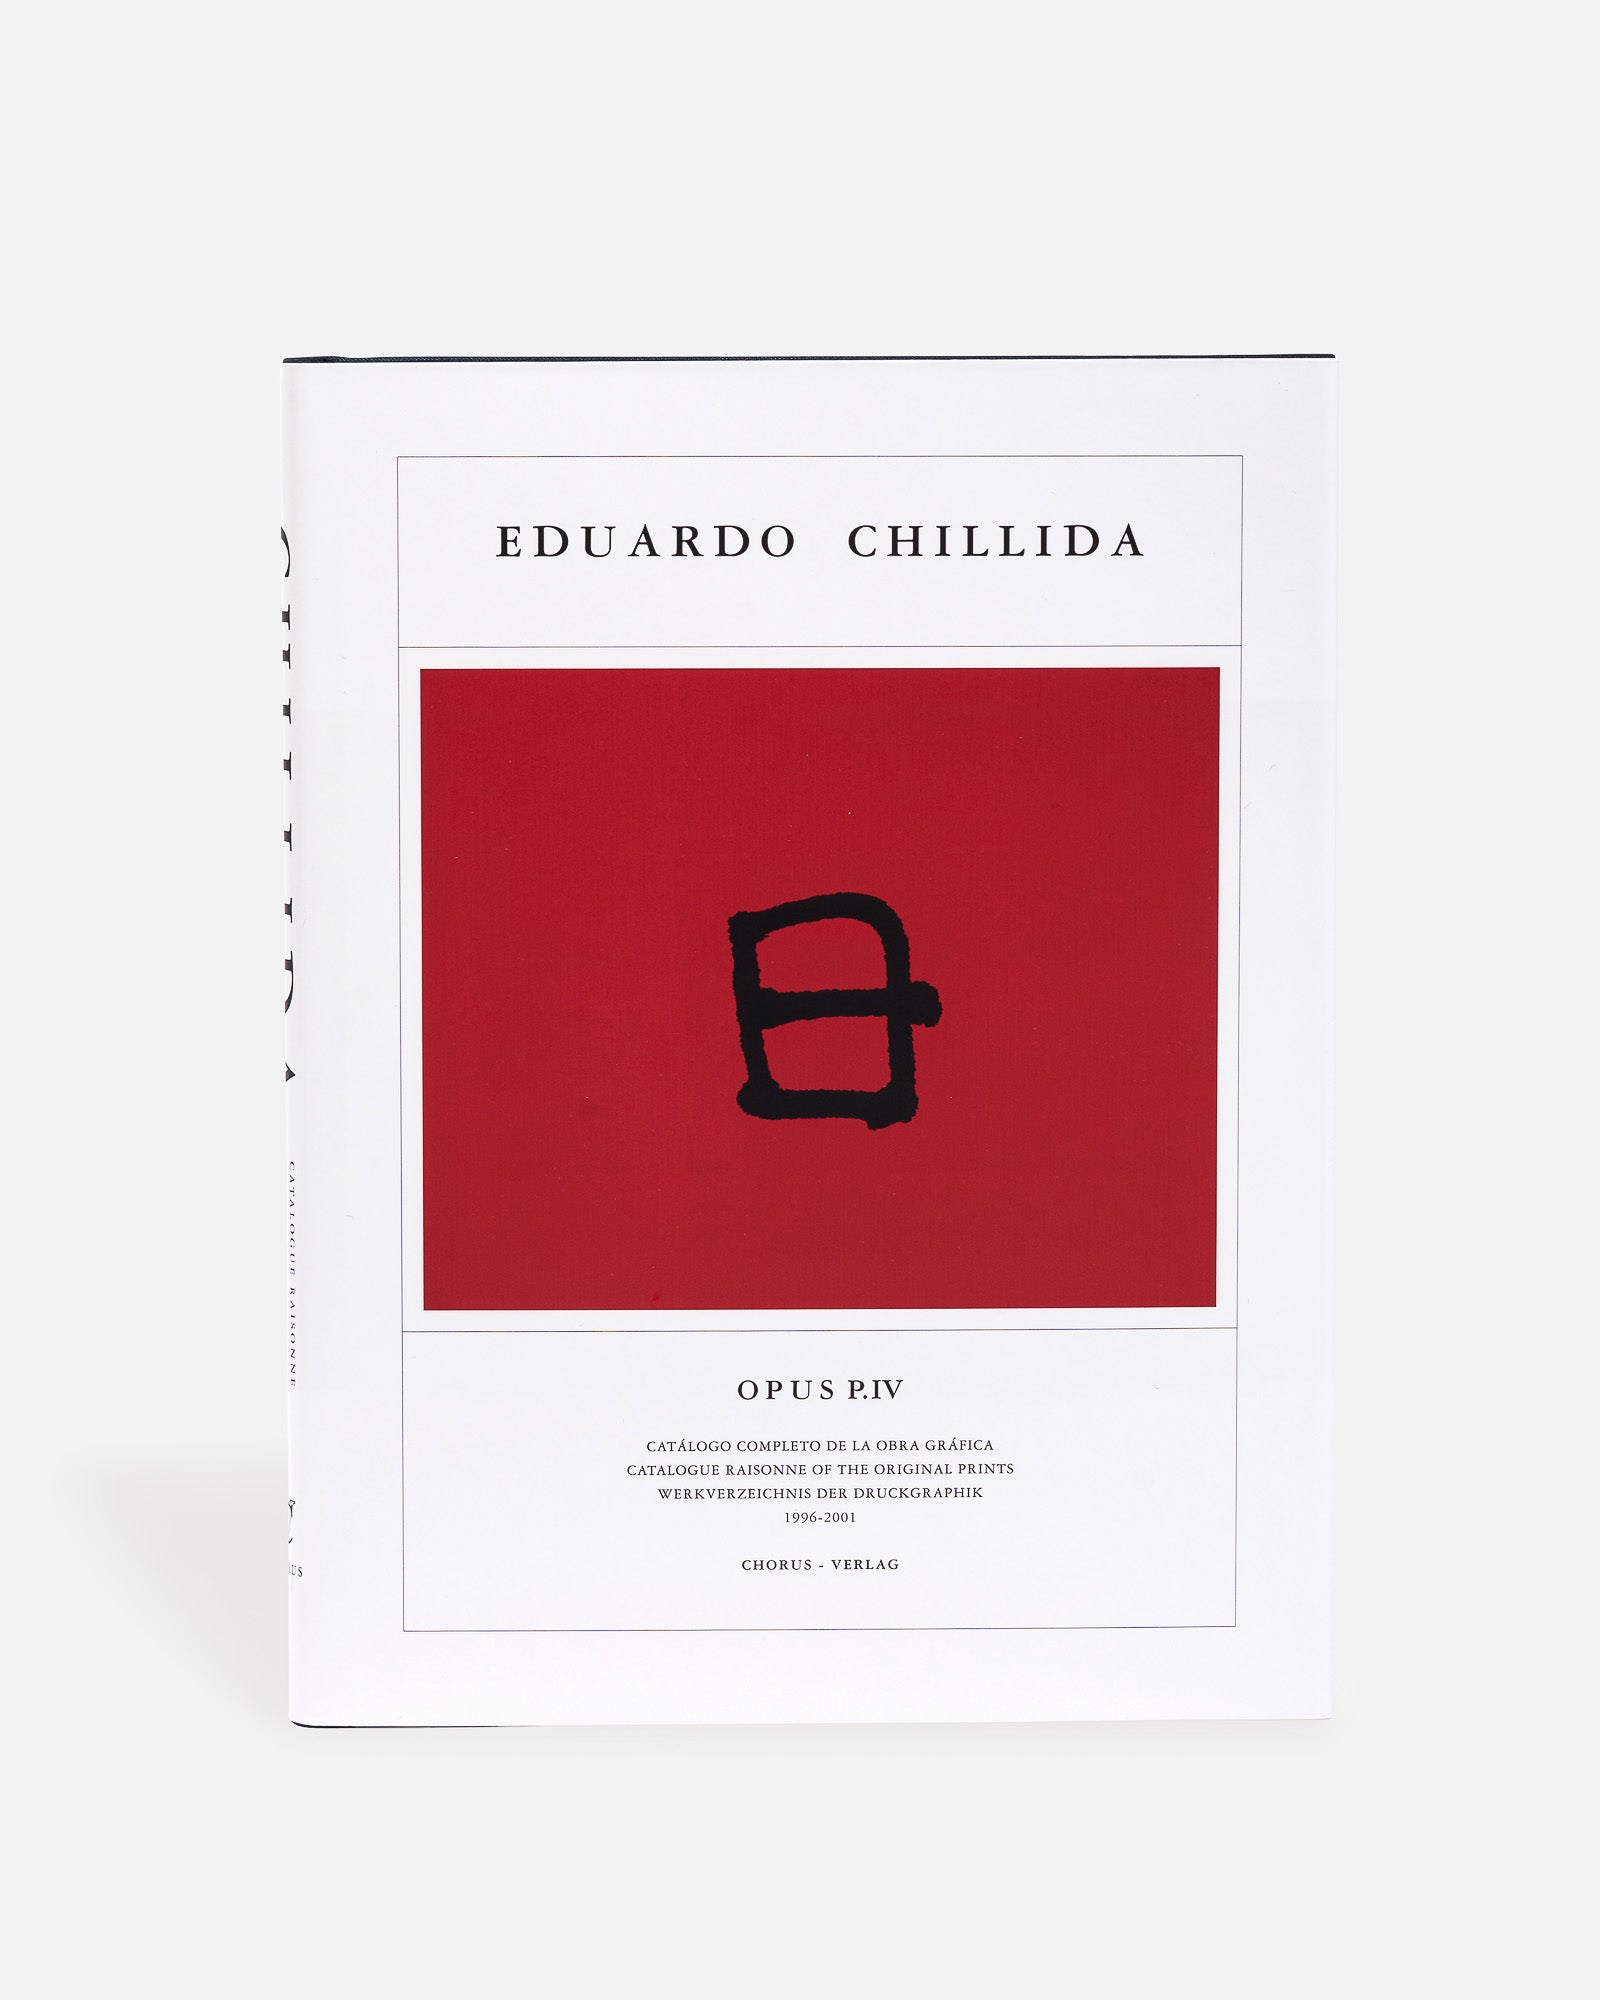 EDUARDO CHILLIDA OPUS IV 1996 - 2001